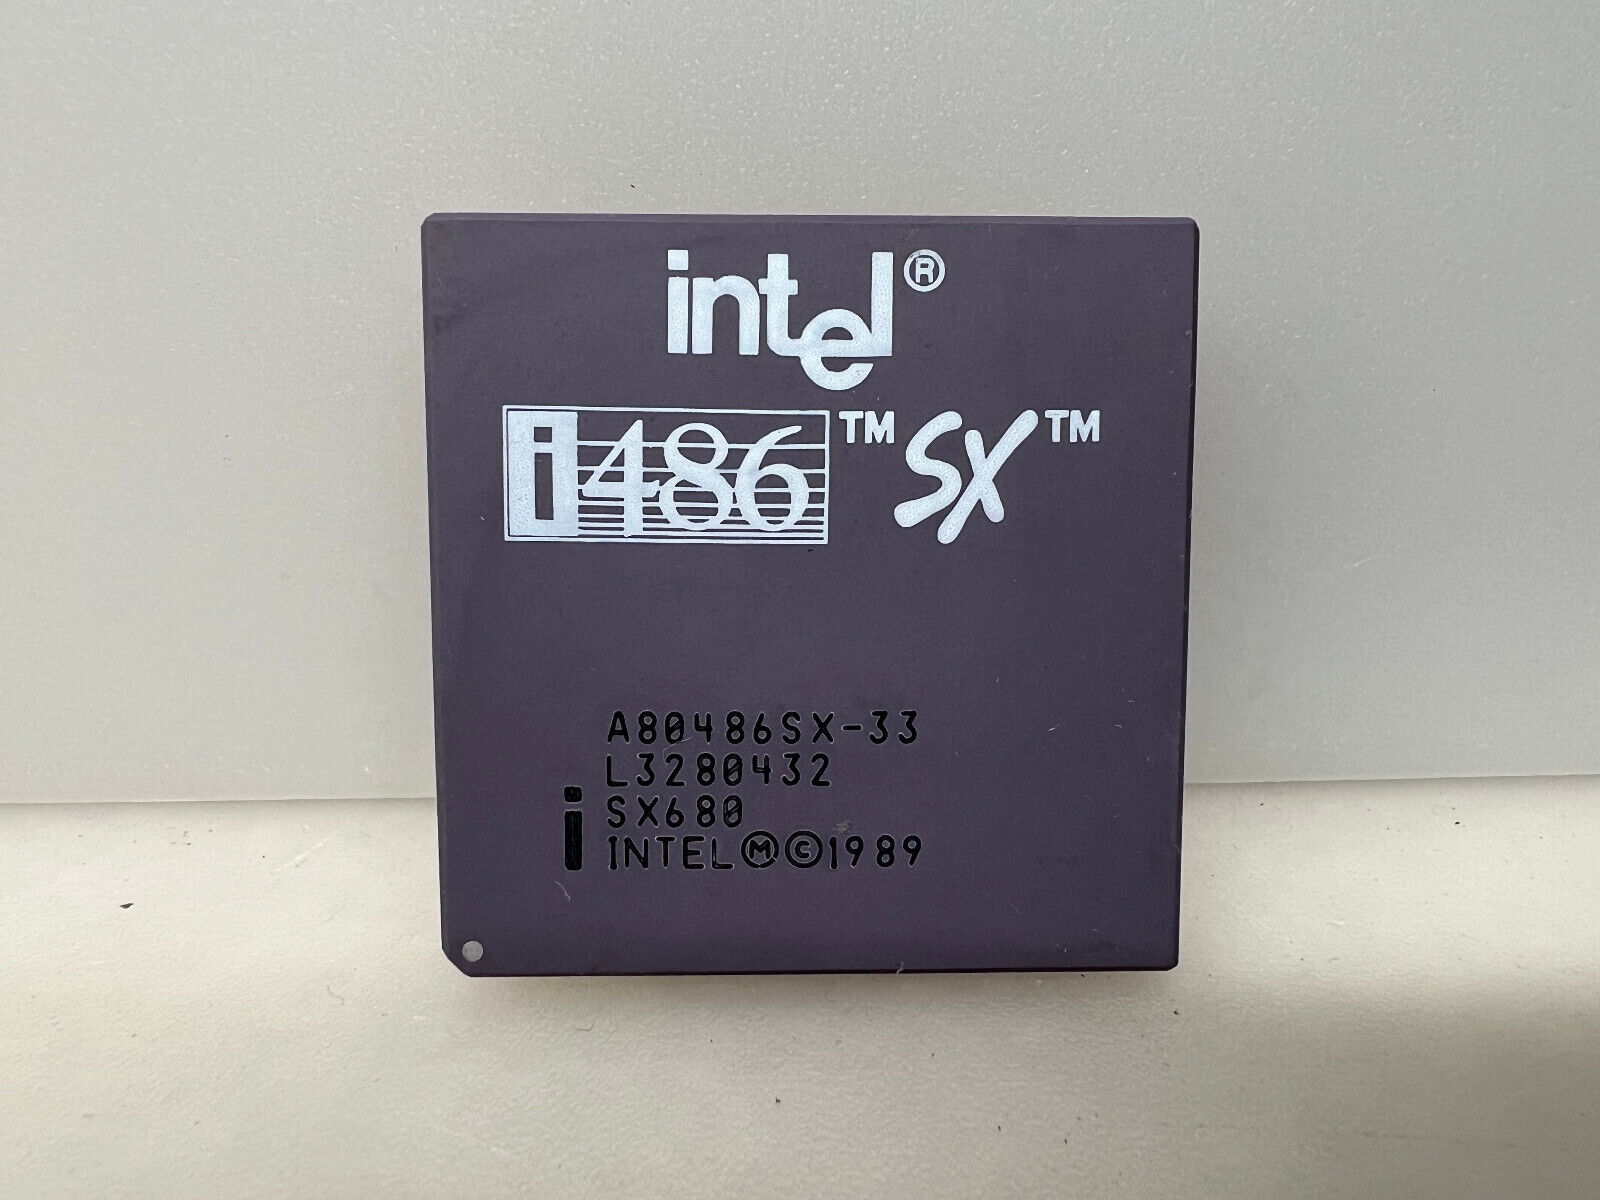 Intel i486SX 33 CPU 